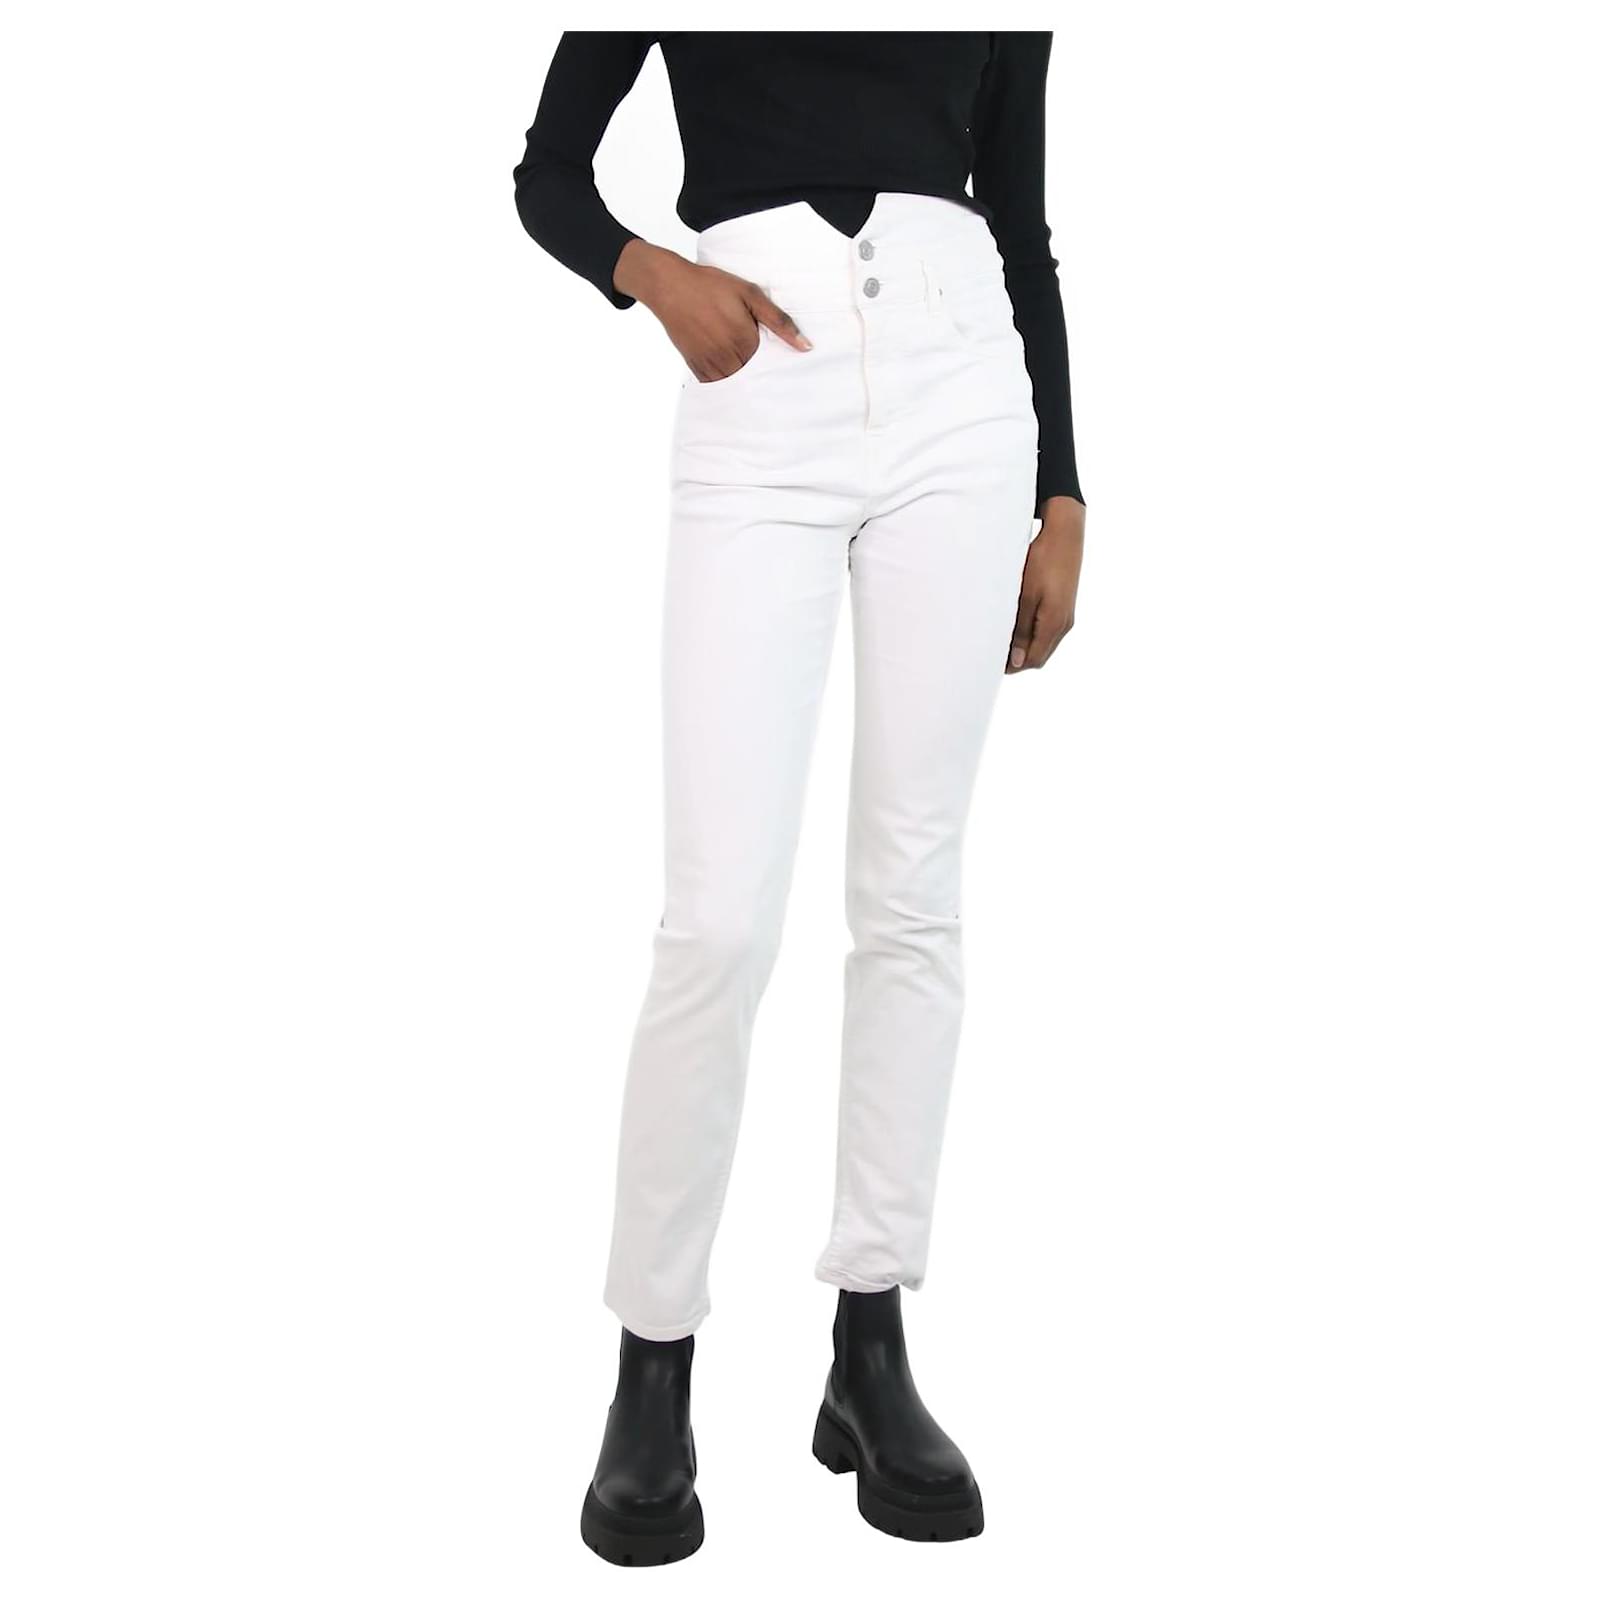 https://cdn1.jolicloset.com/imgr/full/2023/12/1093118-1/isabel-marant-etoile-cotton-white-high-waisted-jeans-size-fr-38-pants-leggings.jpg